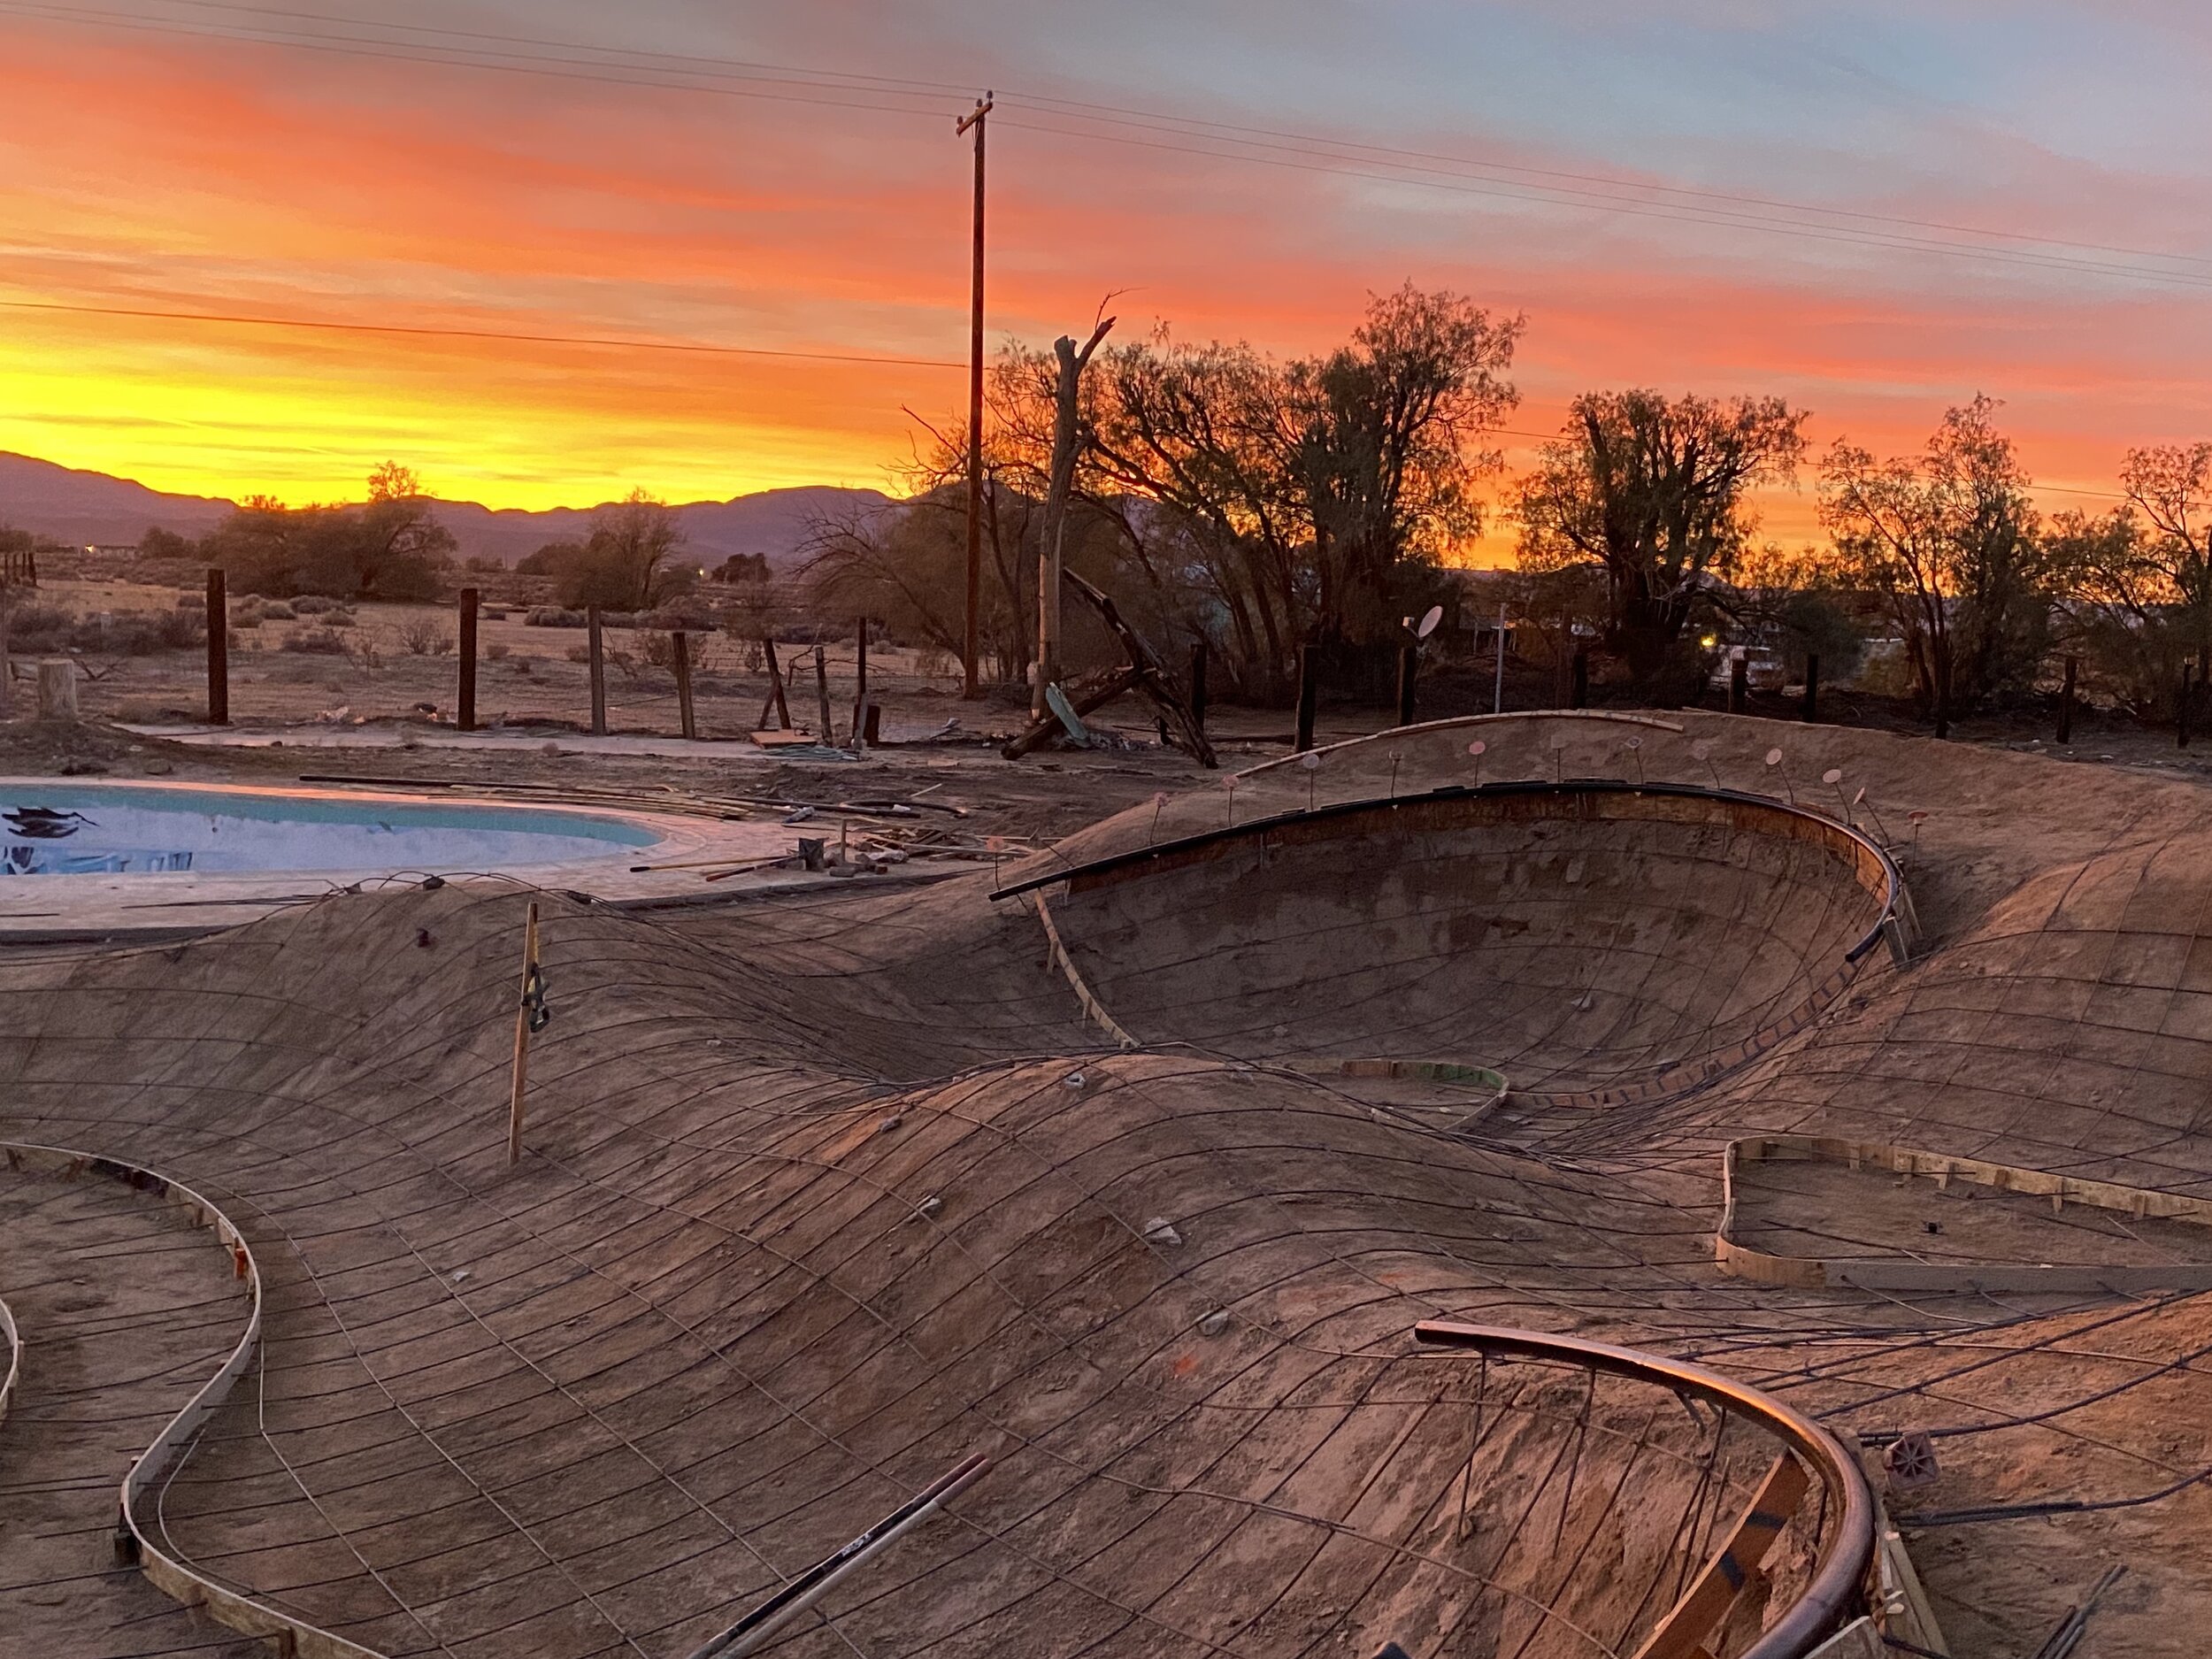 Desert 🌵 skating in the Mojave #desertskateinn #miniskatepark